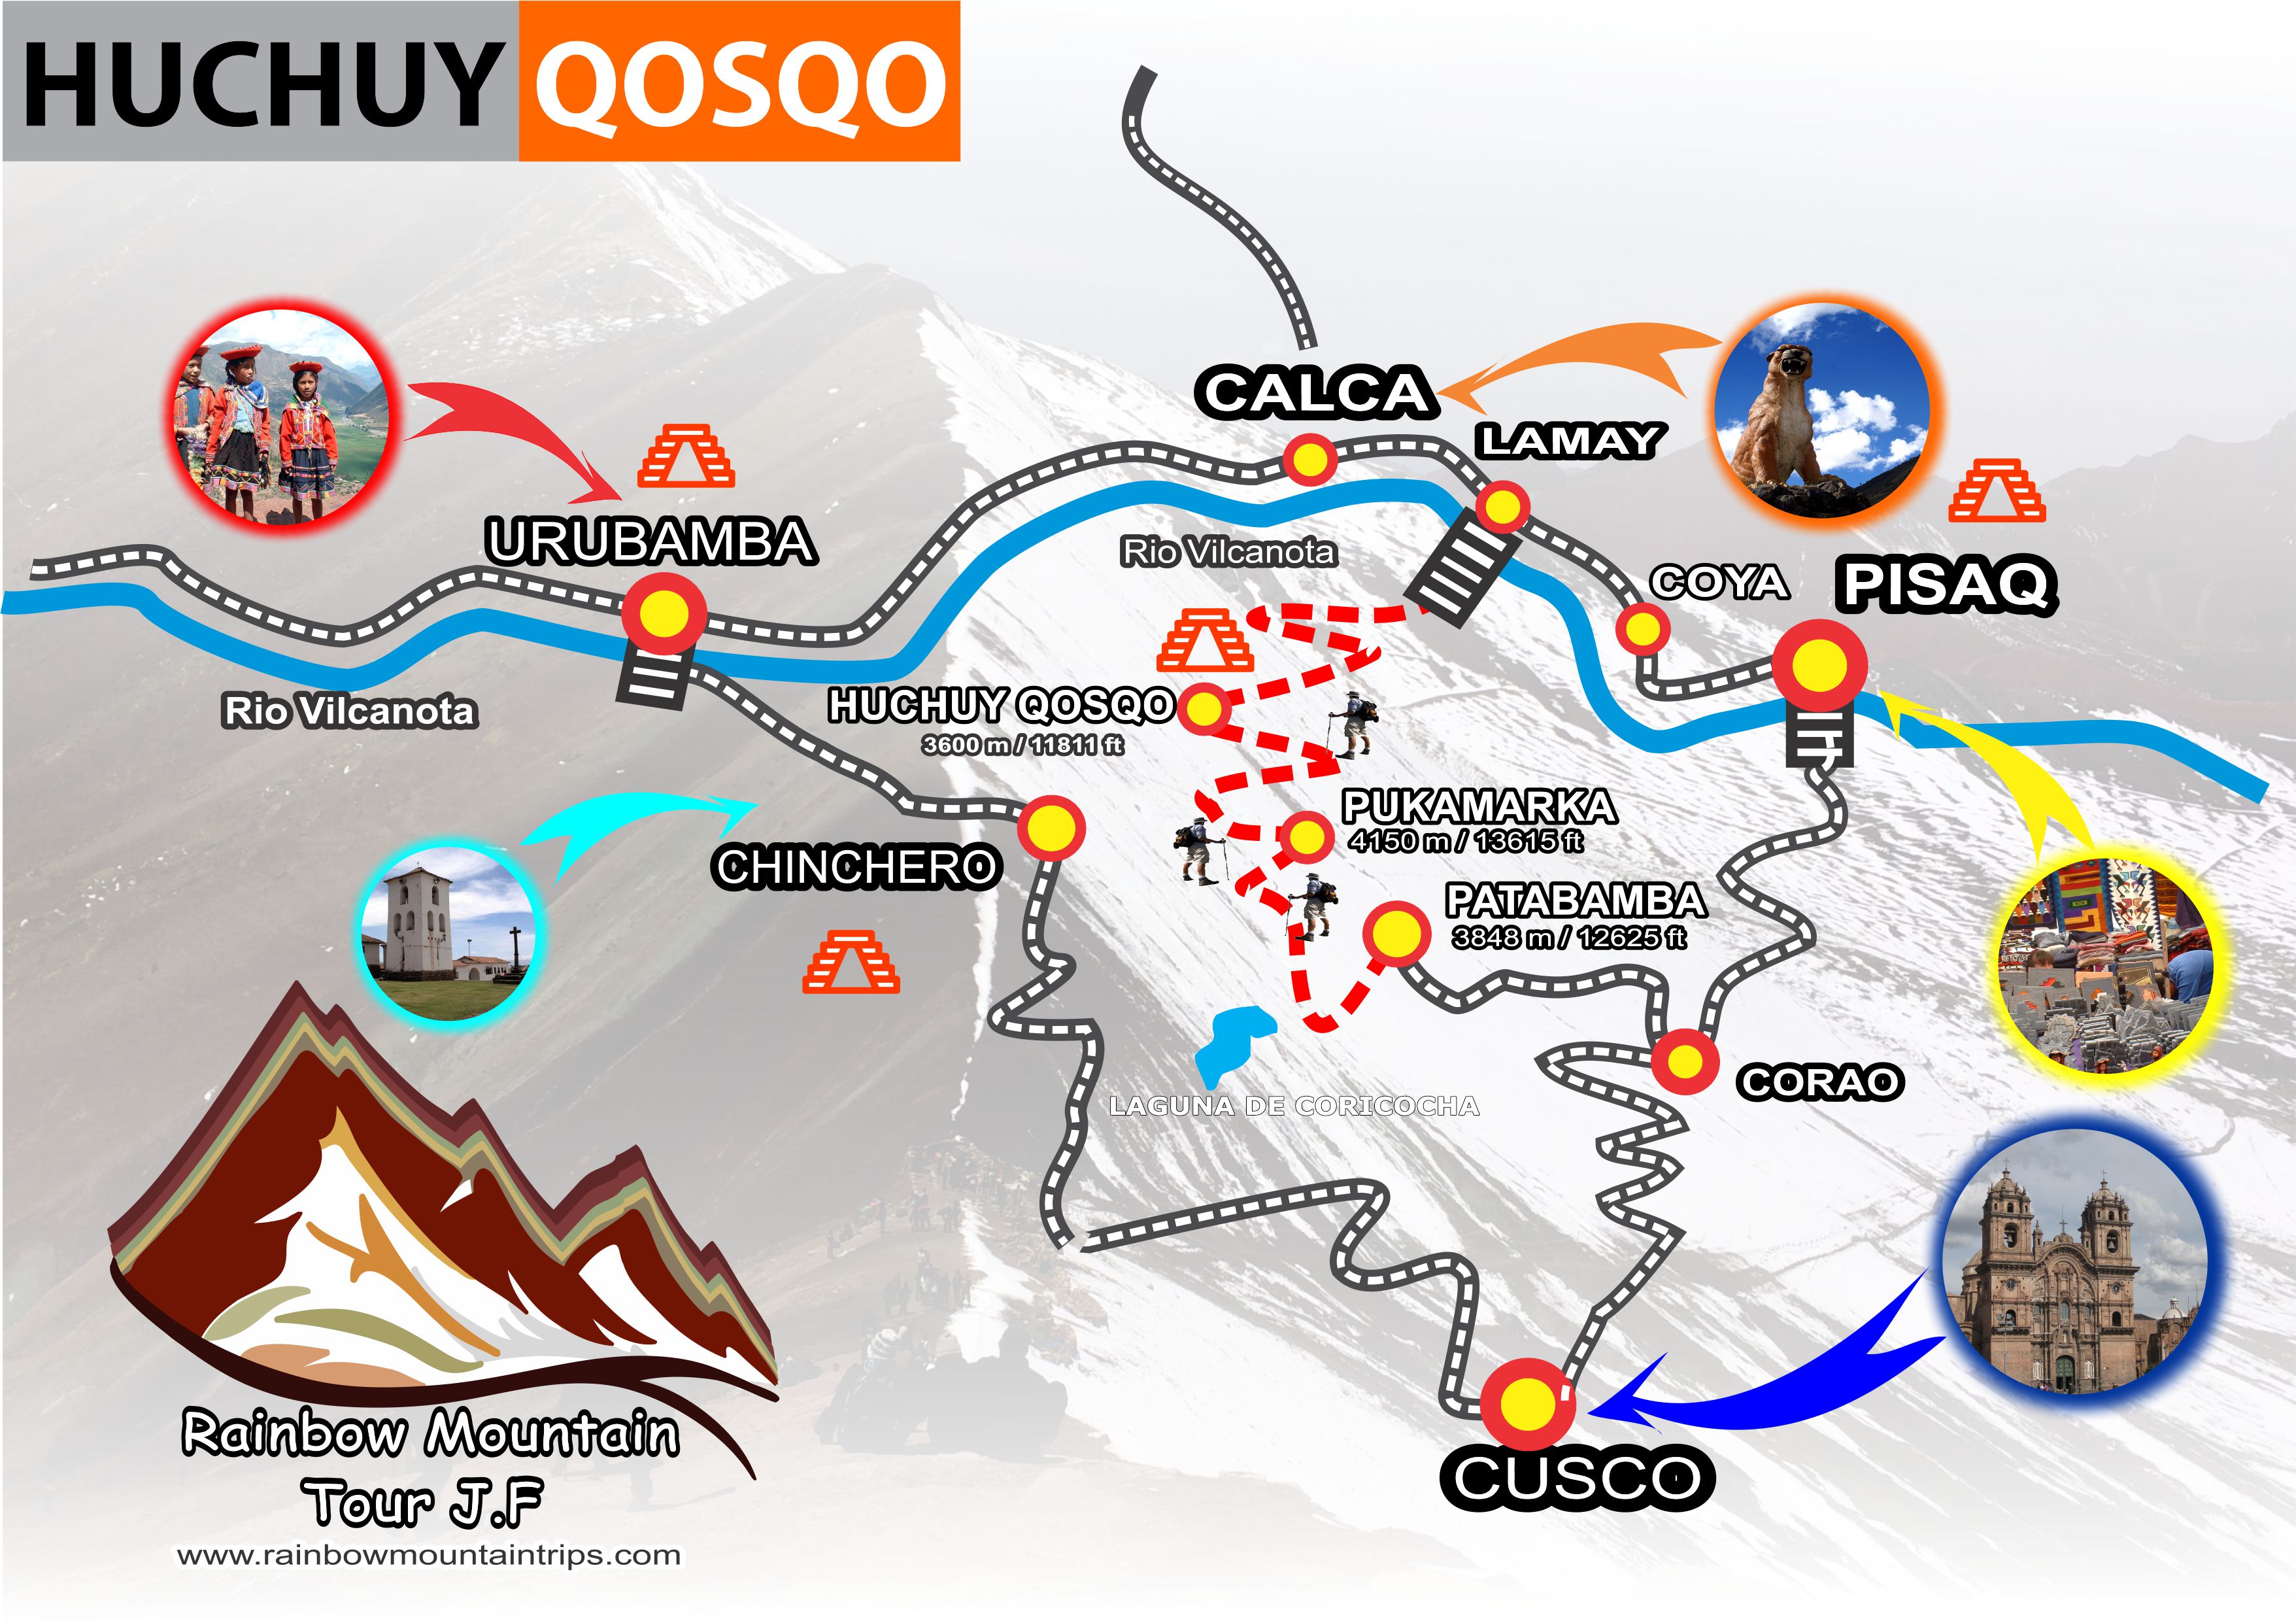 Mapa de huchuy qosqo